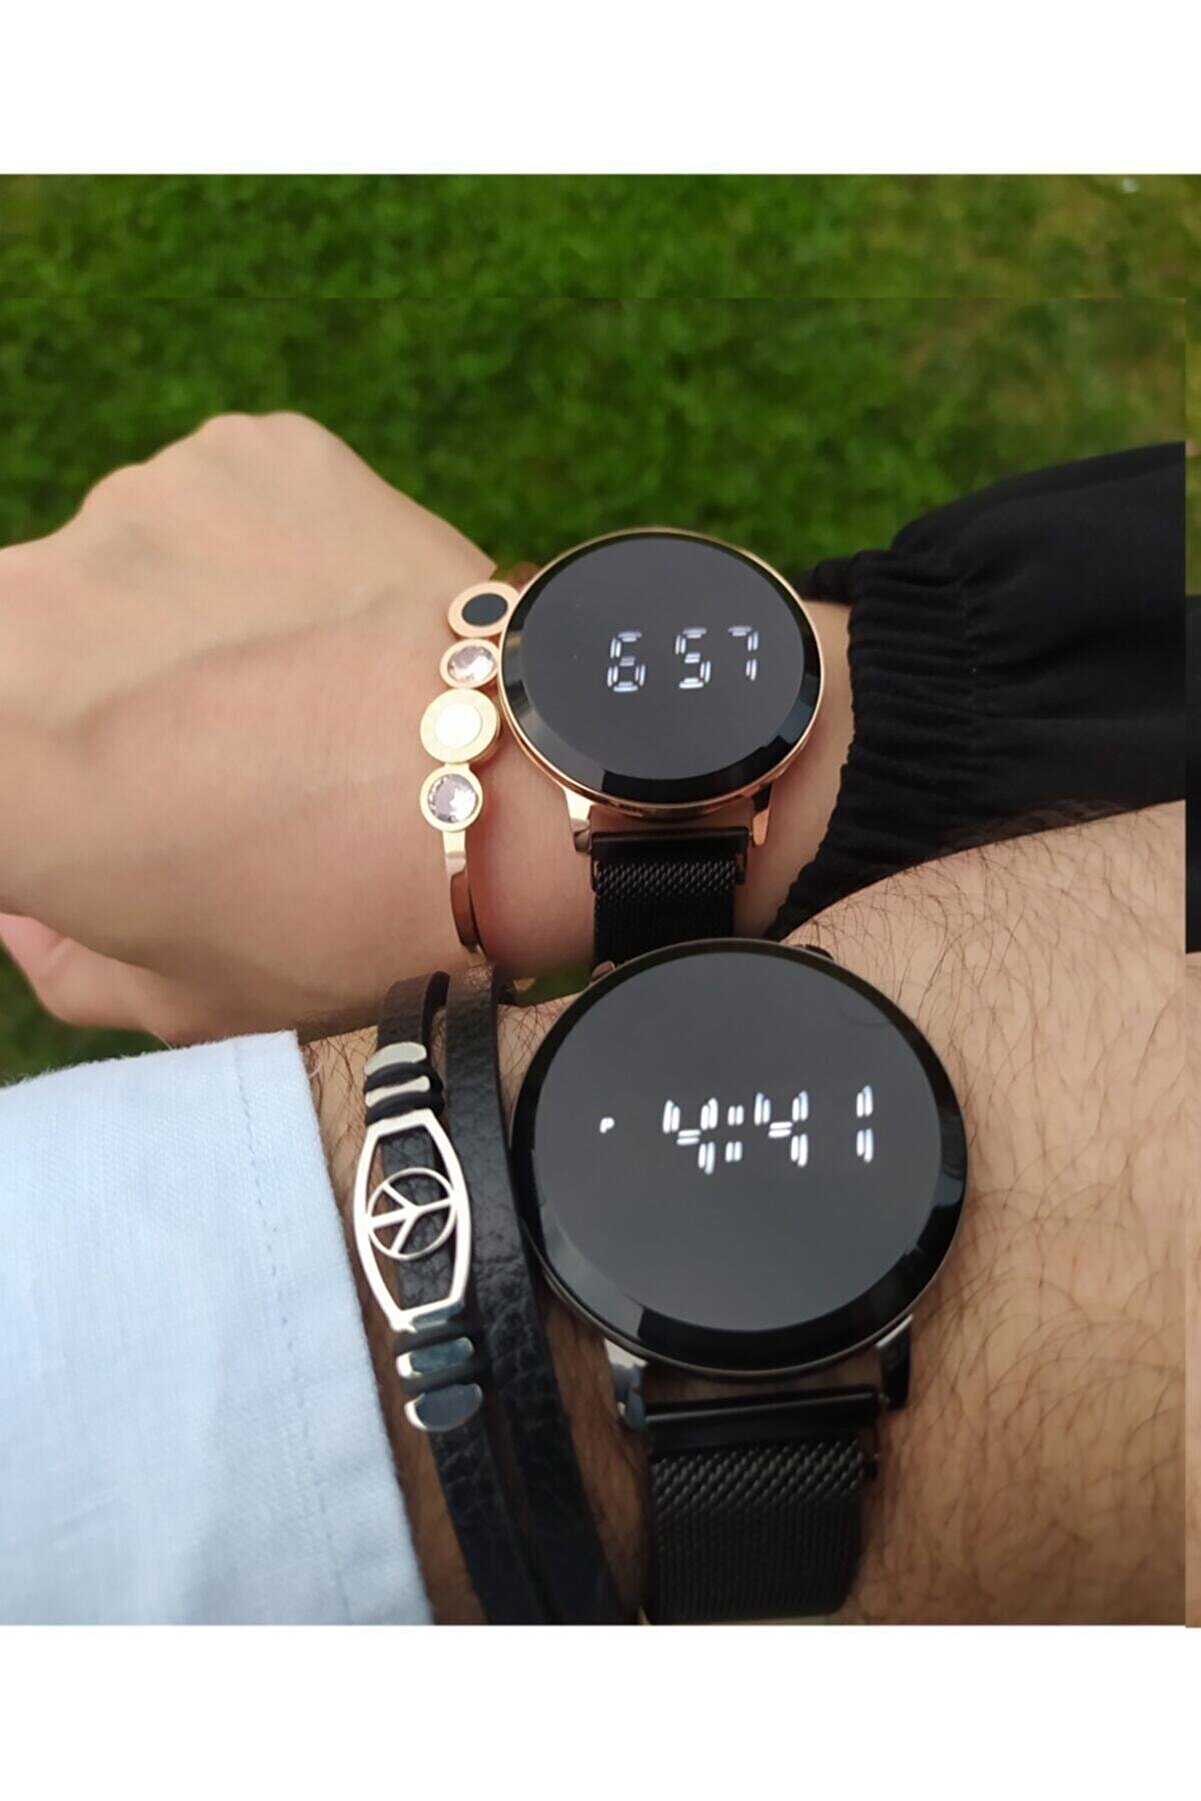 Ricardo Led Çift Kol Saatleri Sevgili Saati Dokunmatik Ekranlı Saat